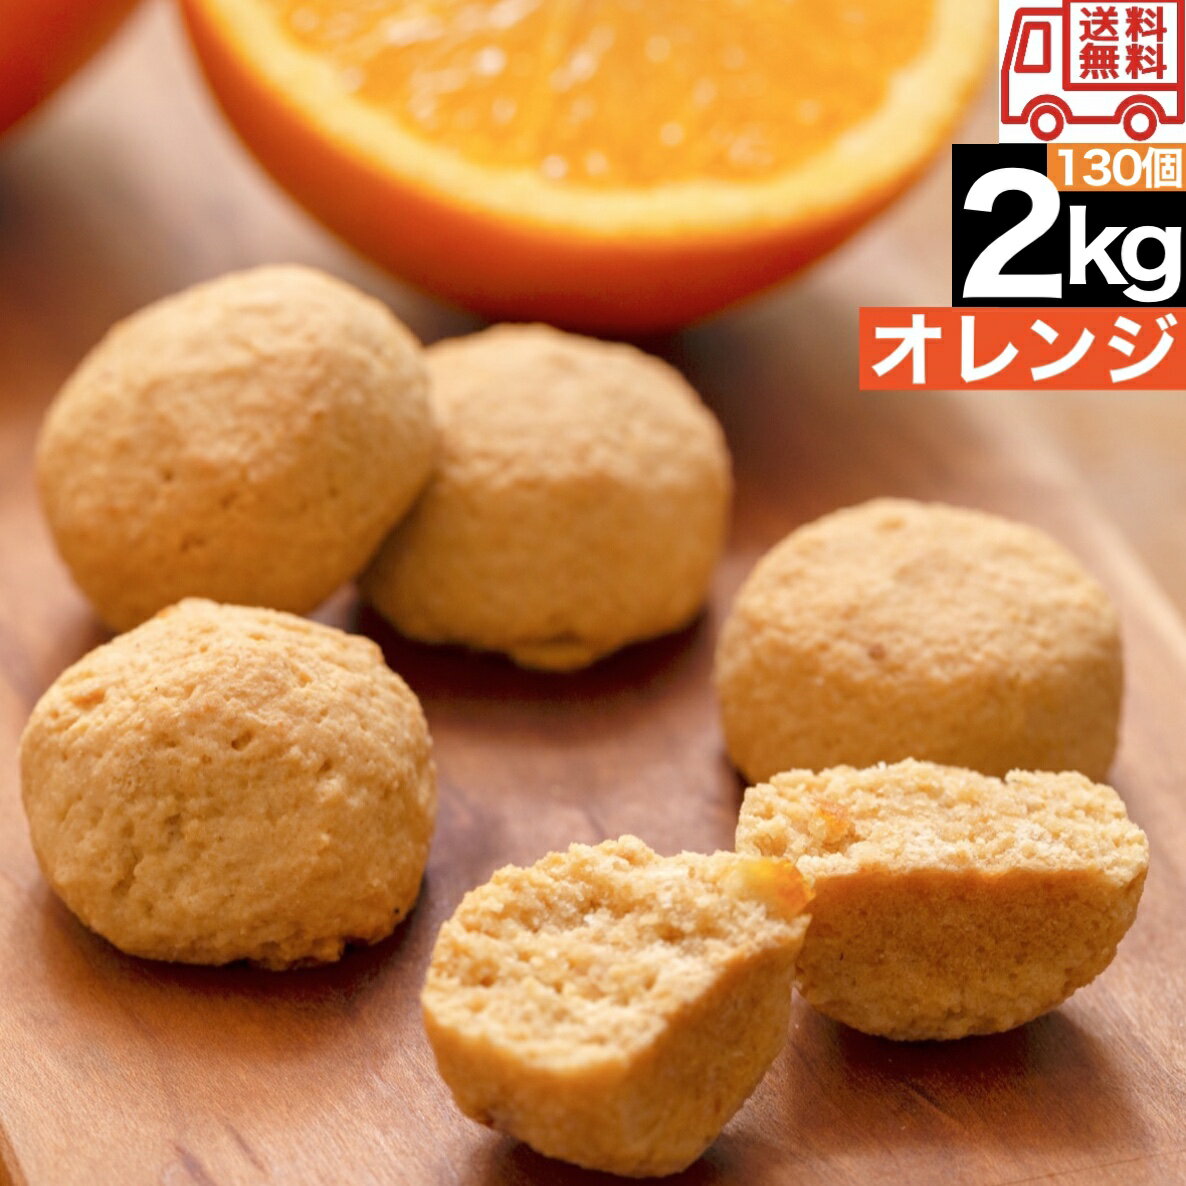 【オレンジ】 豆乳 おからクッキー 2kg 訳あり 送料無料